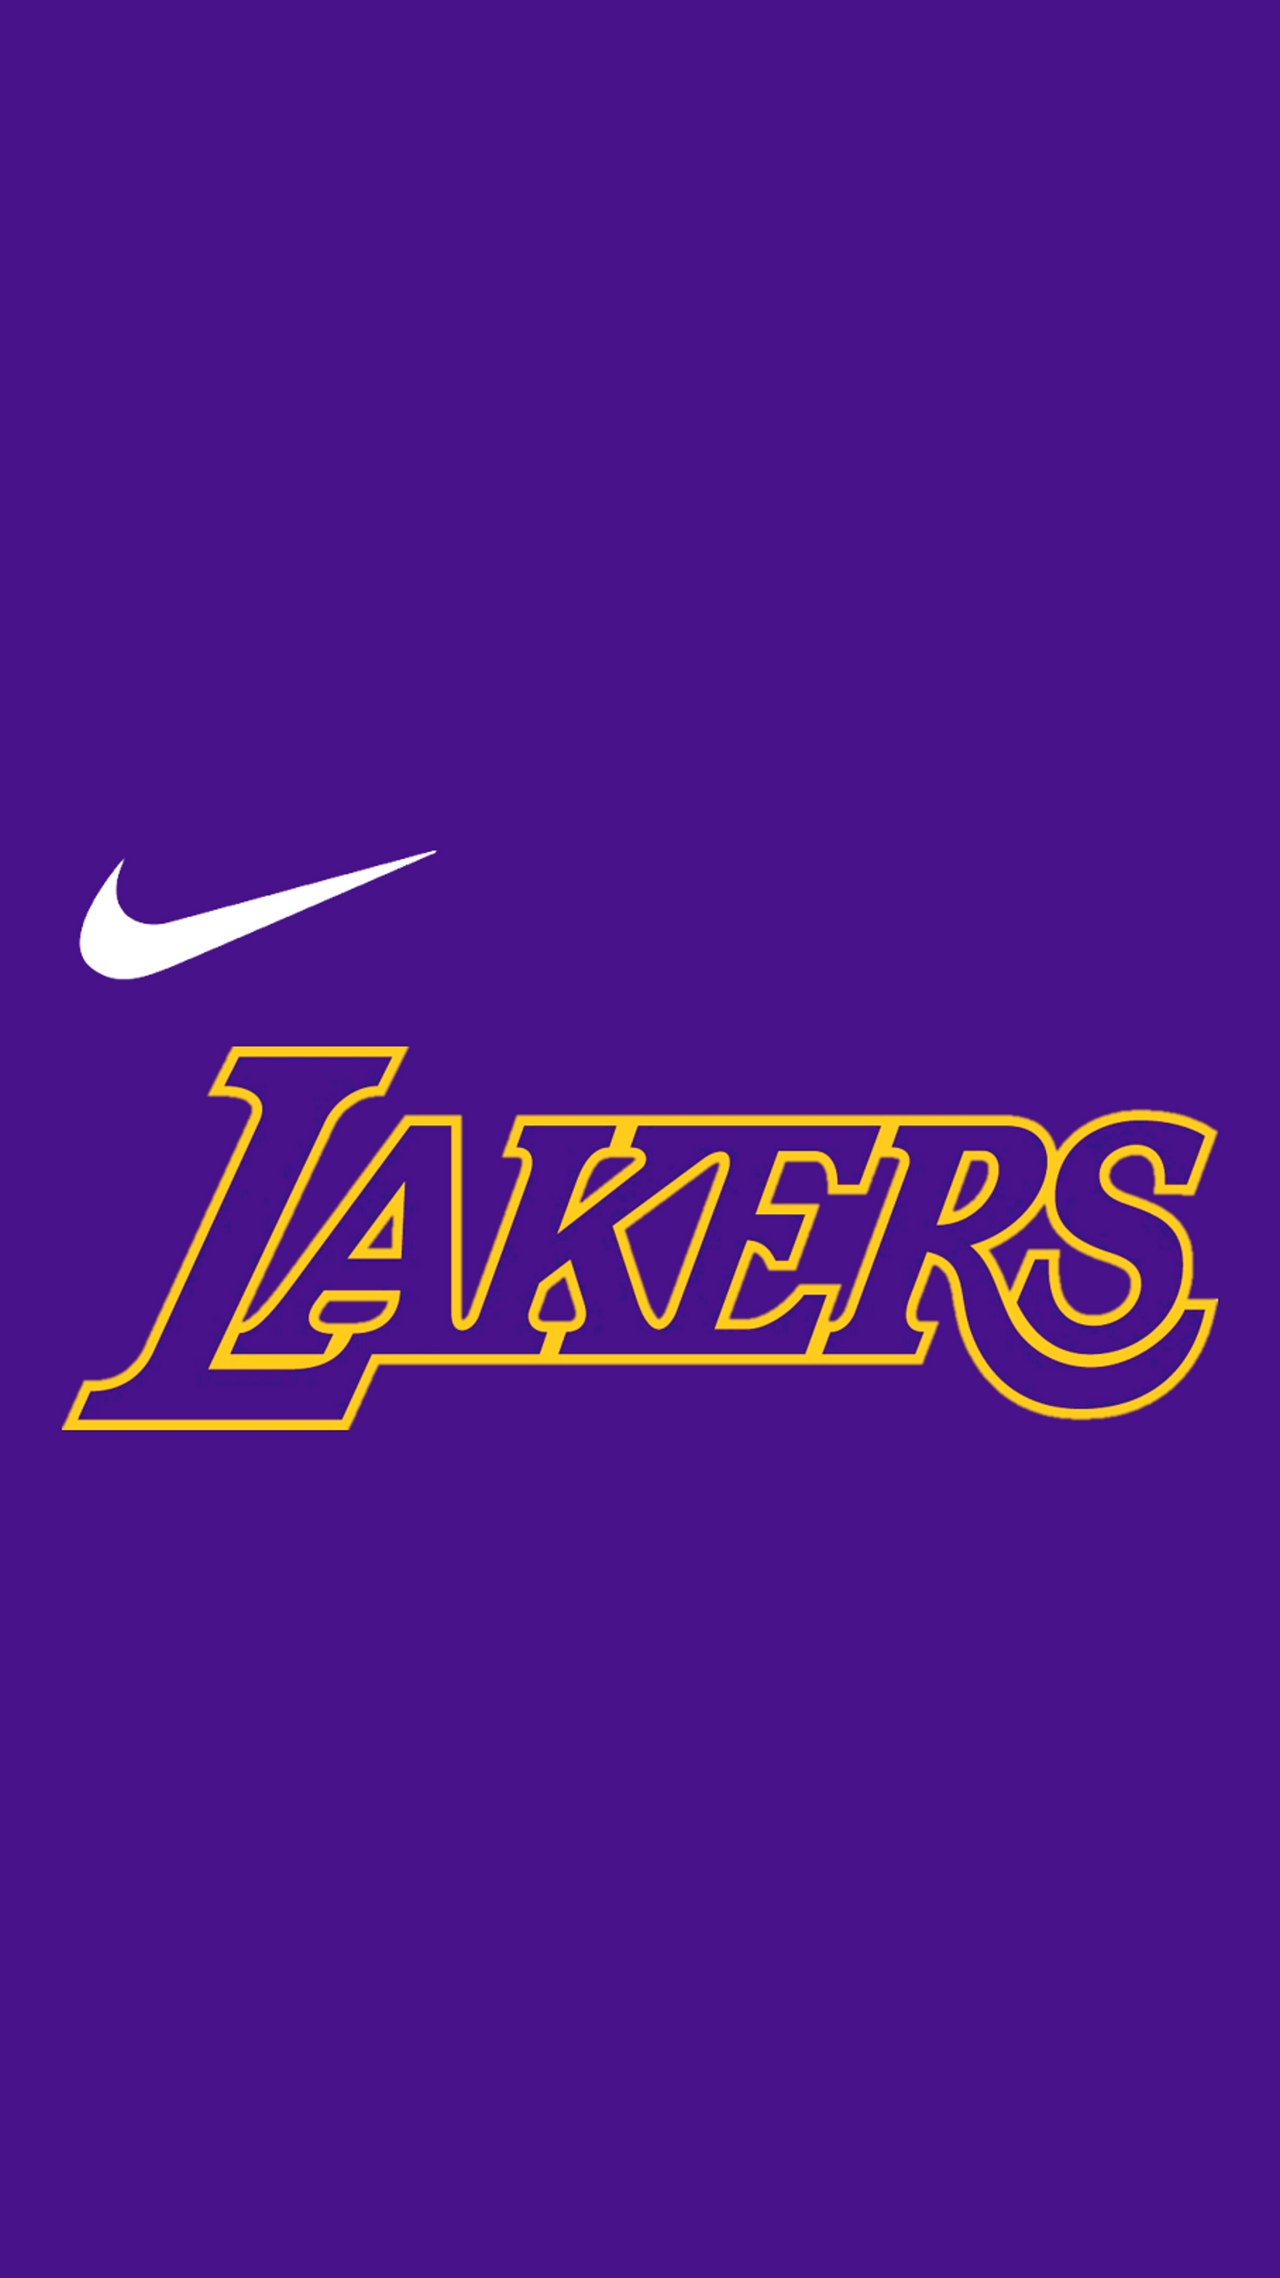 Los Angeles Lakers Logo Wallpaper  Lakers wallpaper, Lakers logo